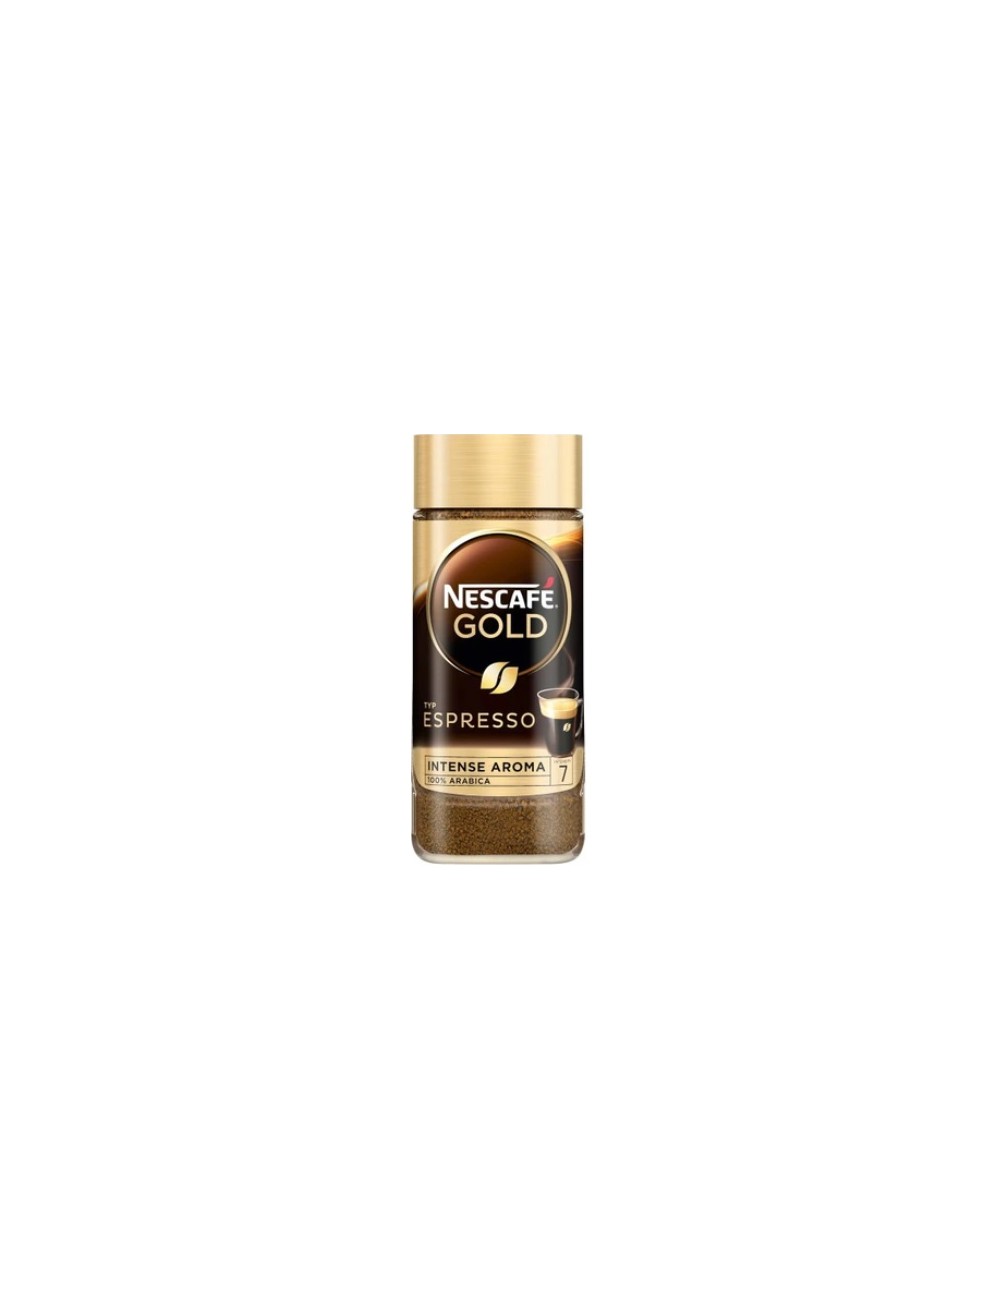 Nescafe Kawa Rozpuszczalna w Słoiku Arabika Gold Espresso Original Intense Aroma 100 g